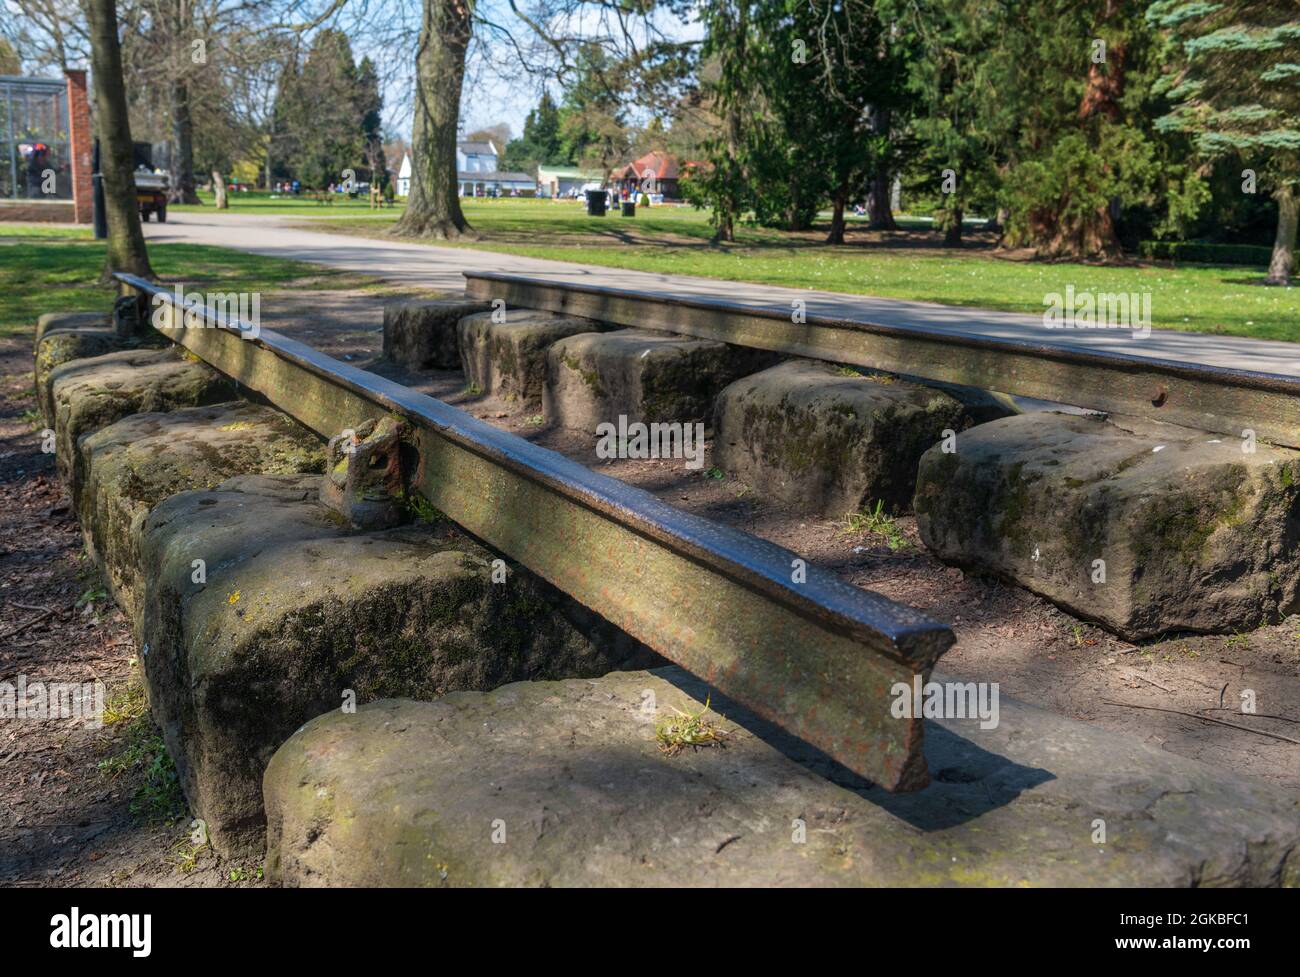 Traviesas históricas de piedra del primer ferrocarril de pasajeros del mundo conservado en South Park, Darlington, Condado de Durham Foto de stock